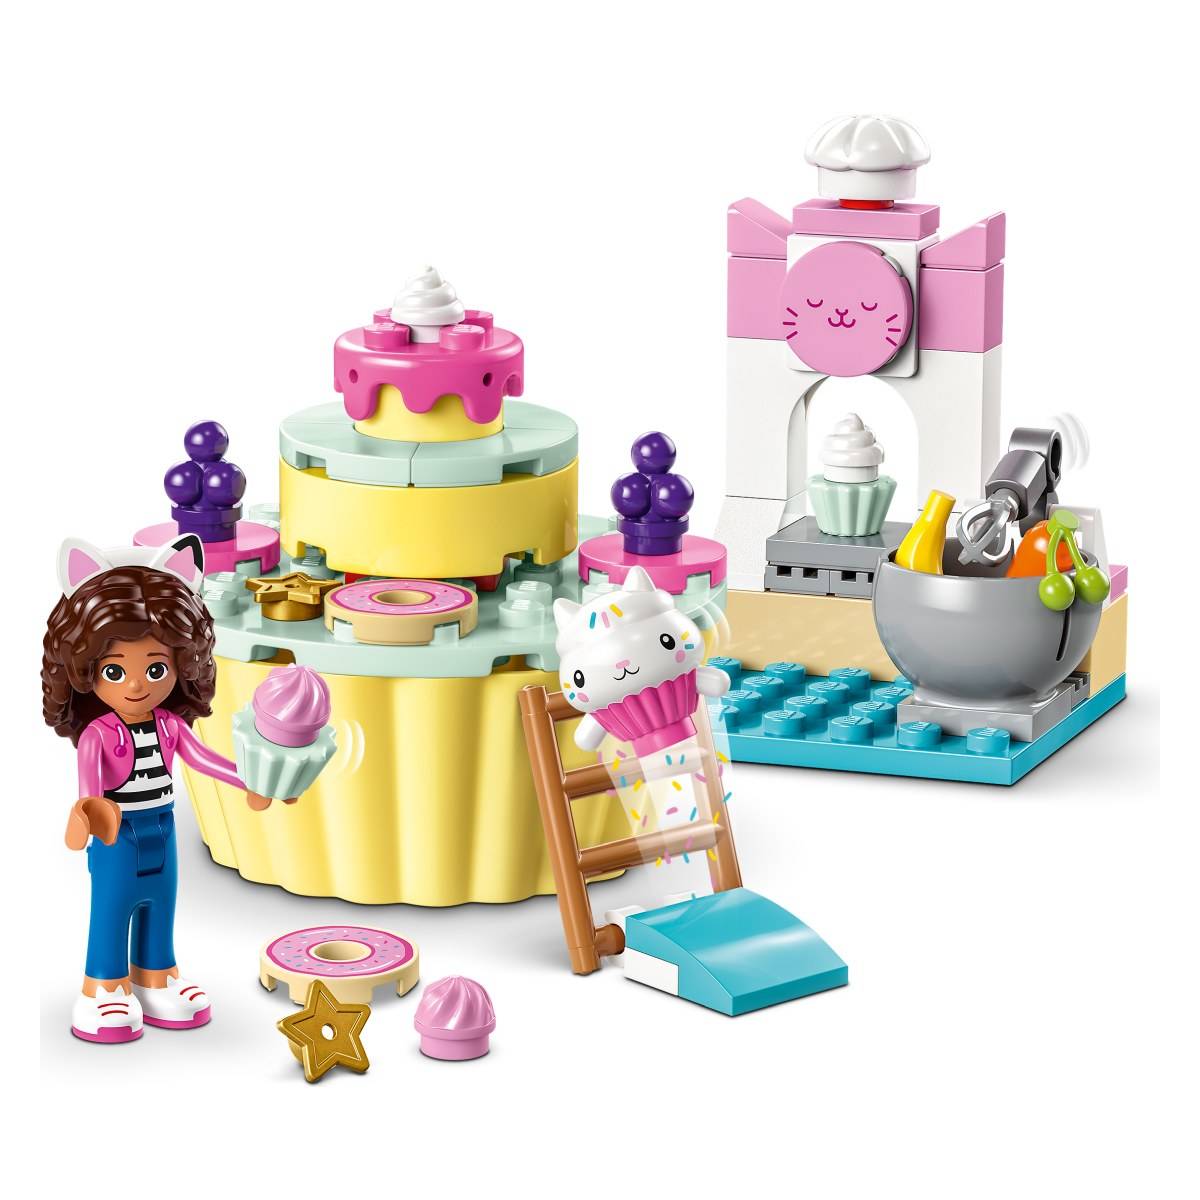 Lego Gabby s Dollhouse Lego Gabby s Dollhouse 10785 Zabavna peka z Mrvico -  Baby Center spletna trgovina